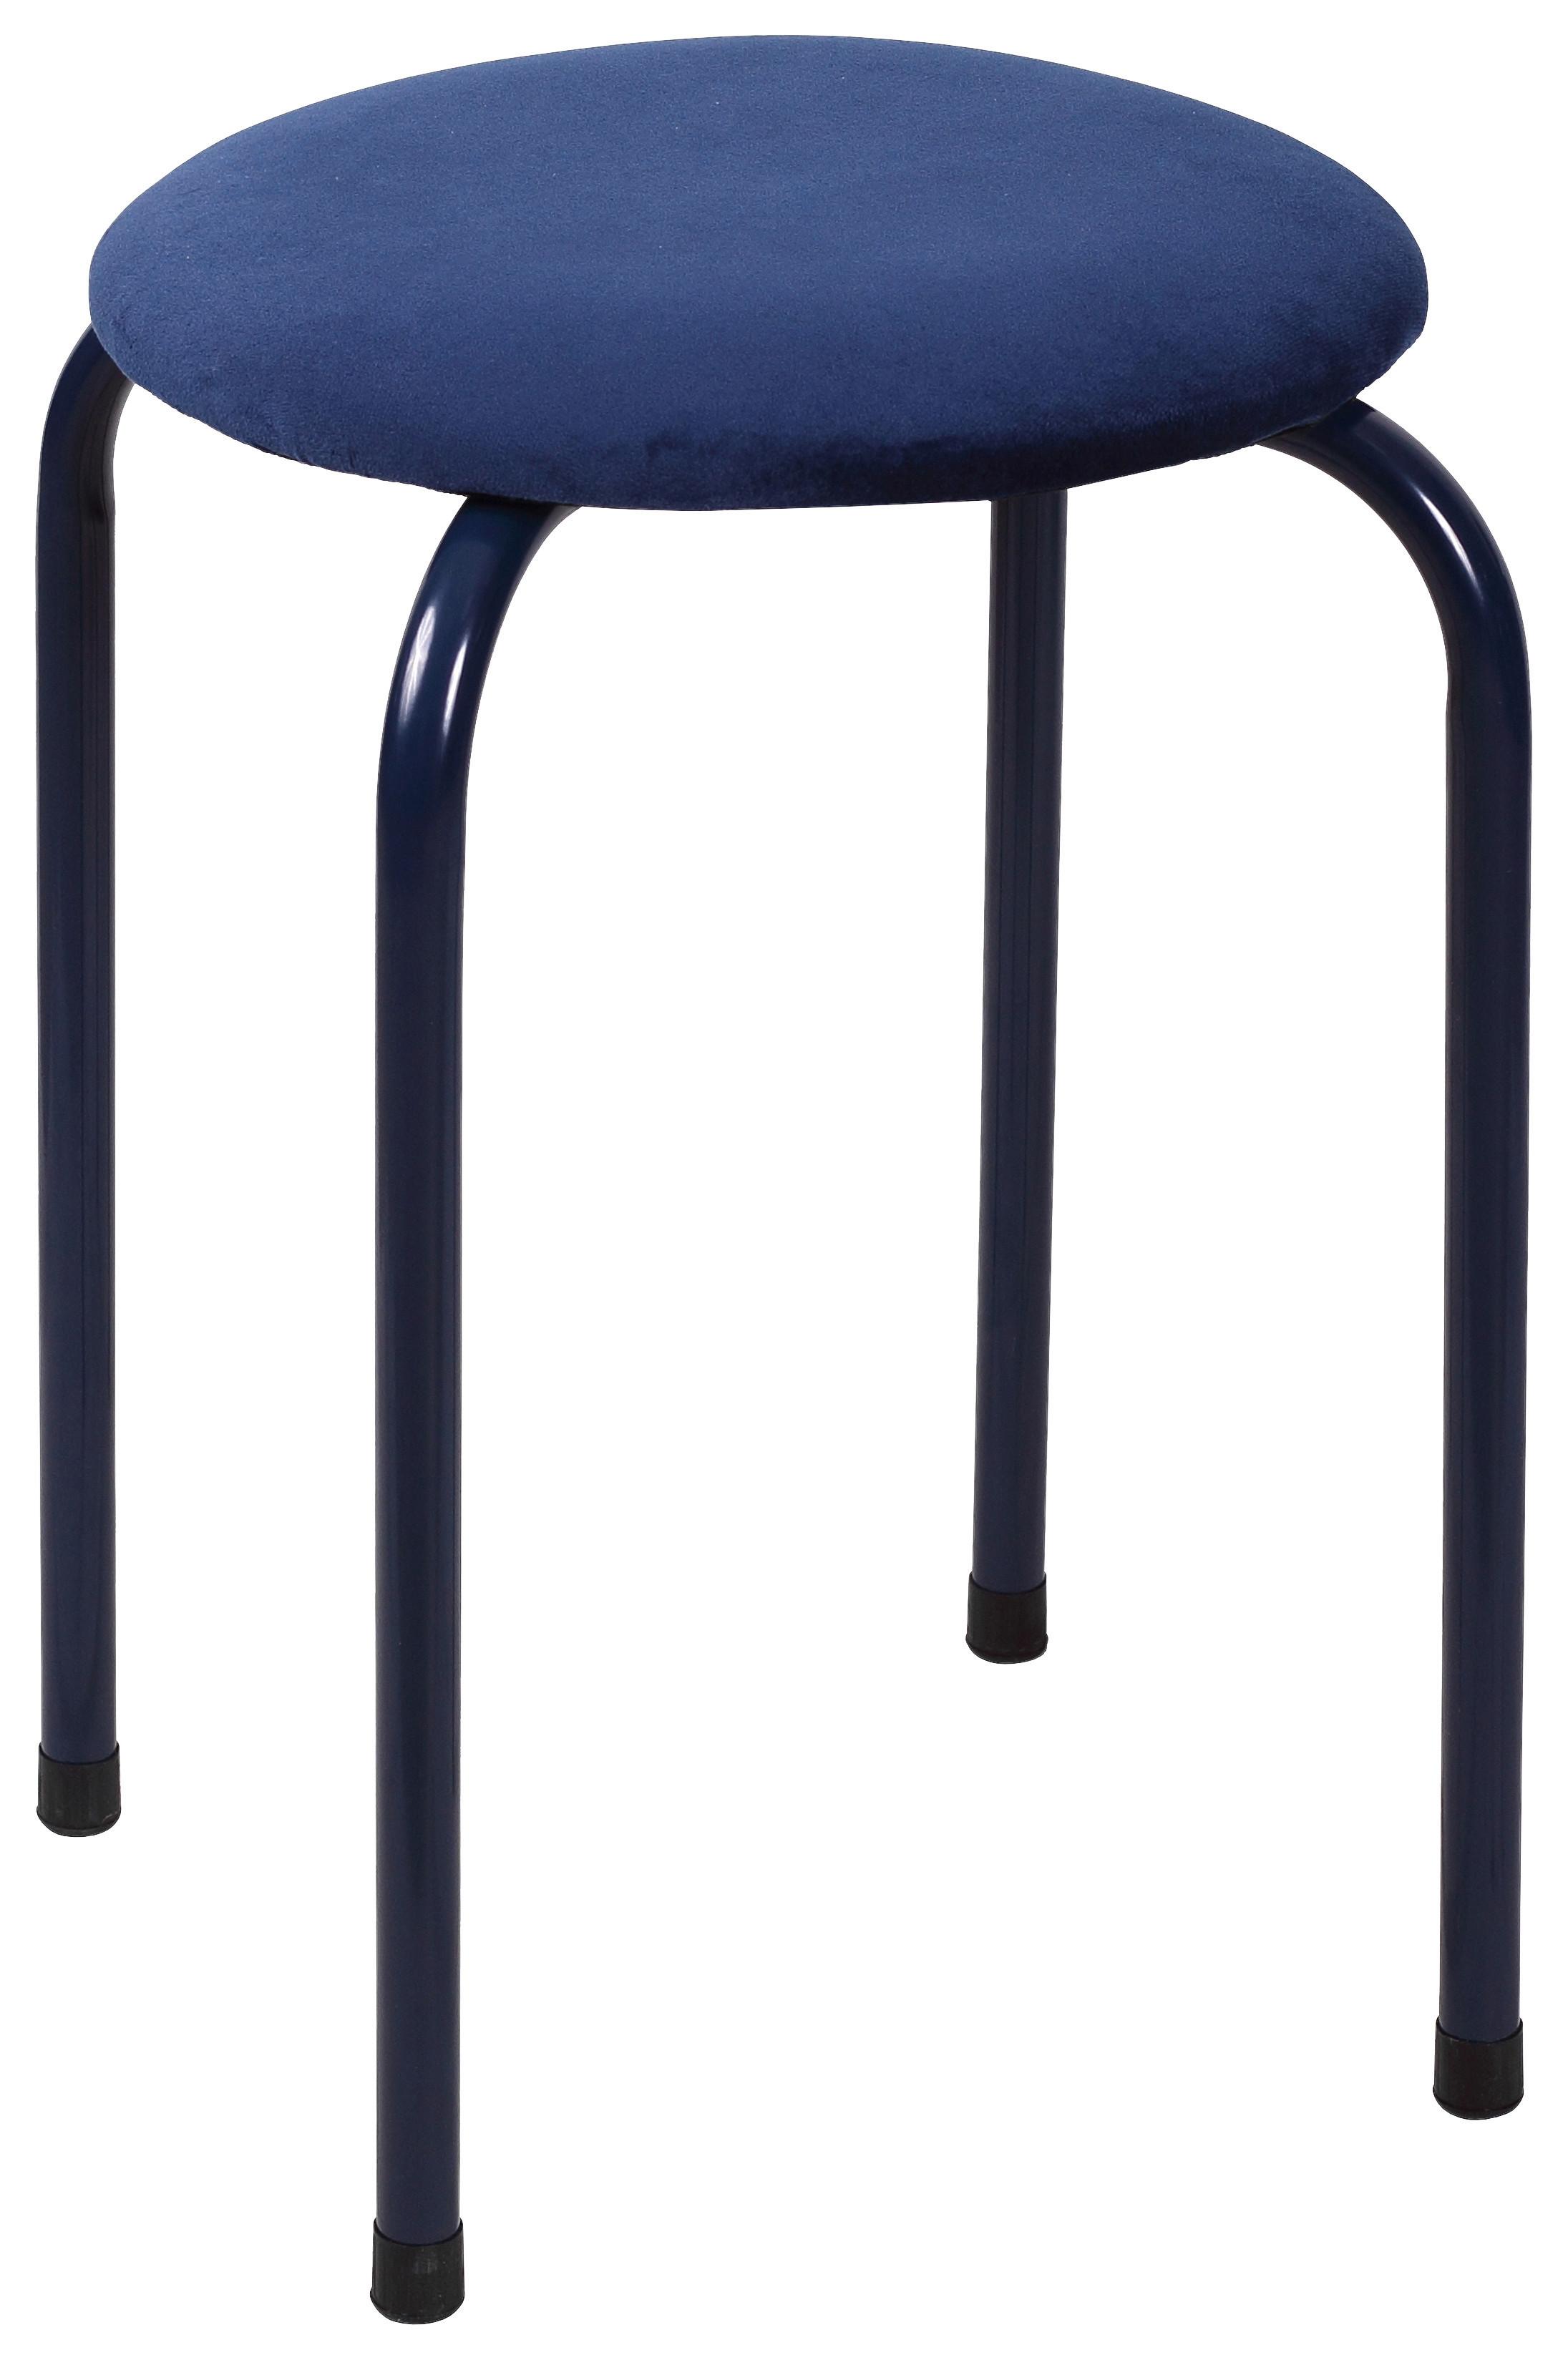 Ülőke Kék Isabelle - Kék, konvencionális, Fém/Textil (30/45cm) - Modern Living